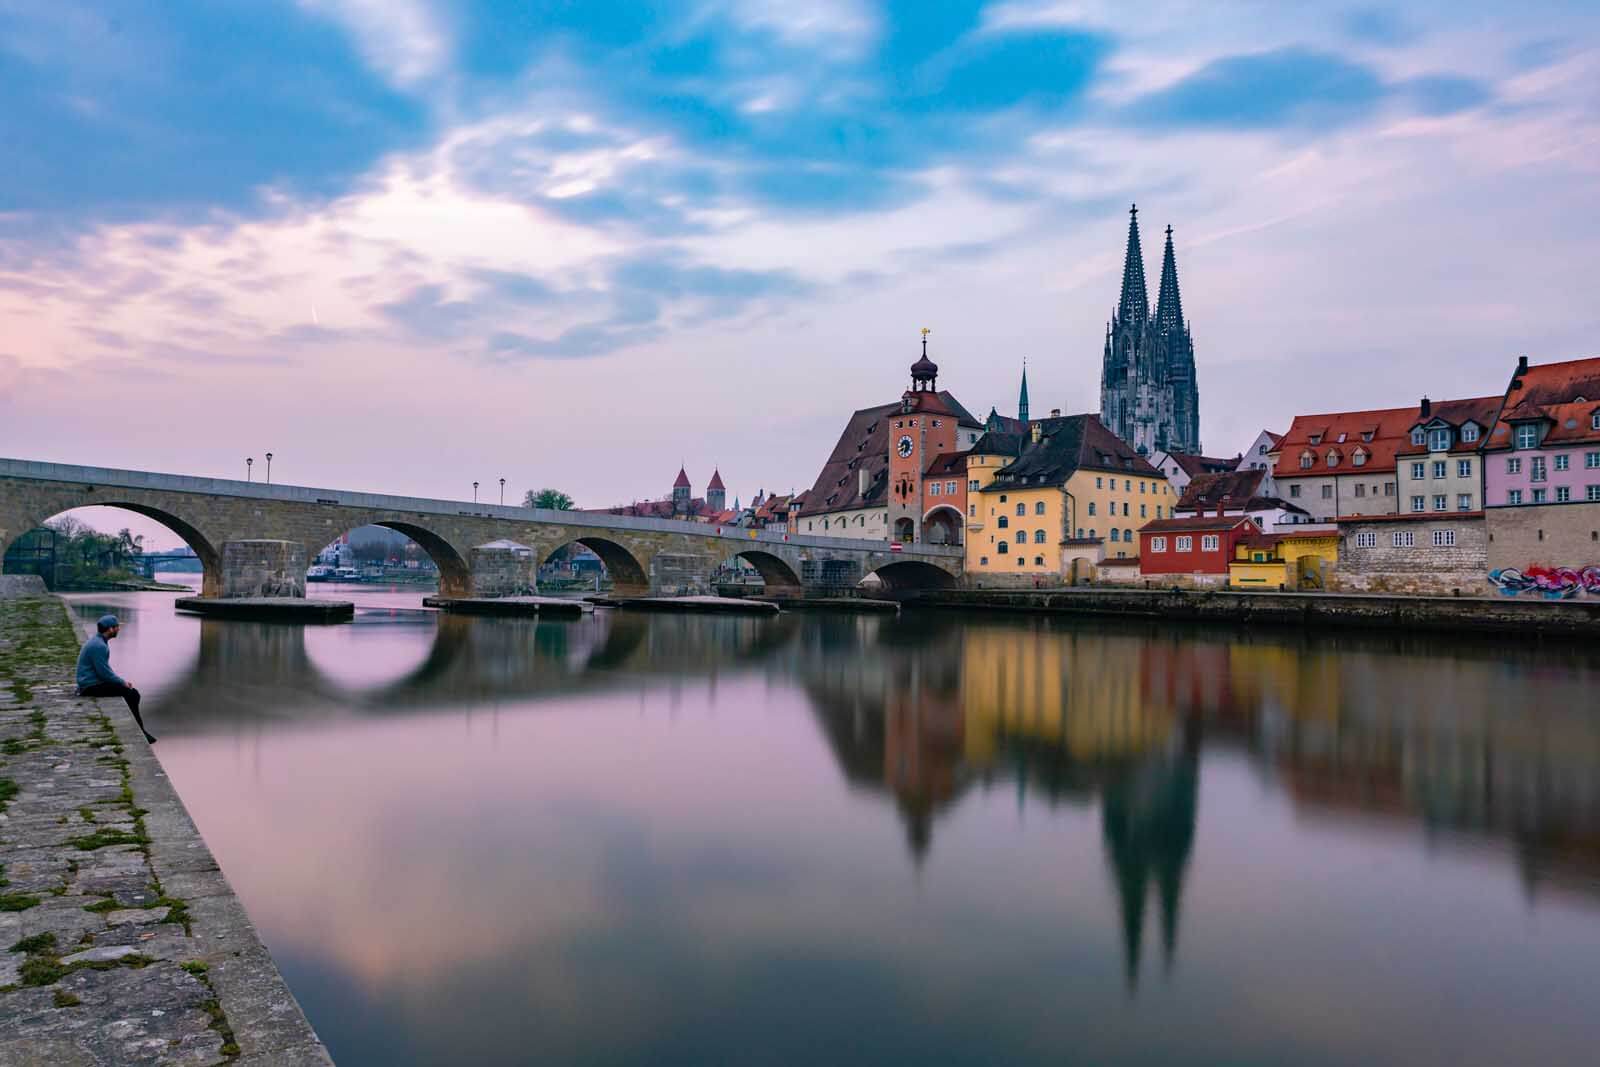 The Stone Bridge in Regensburg Germany